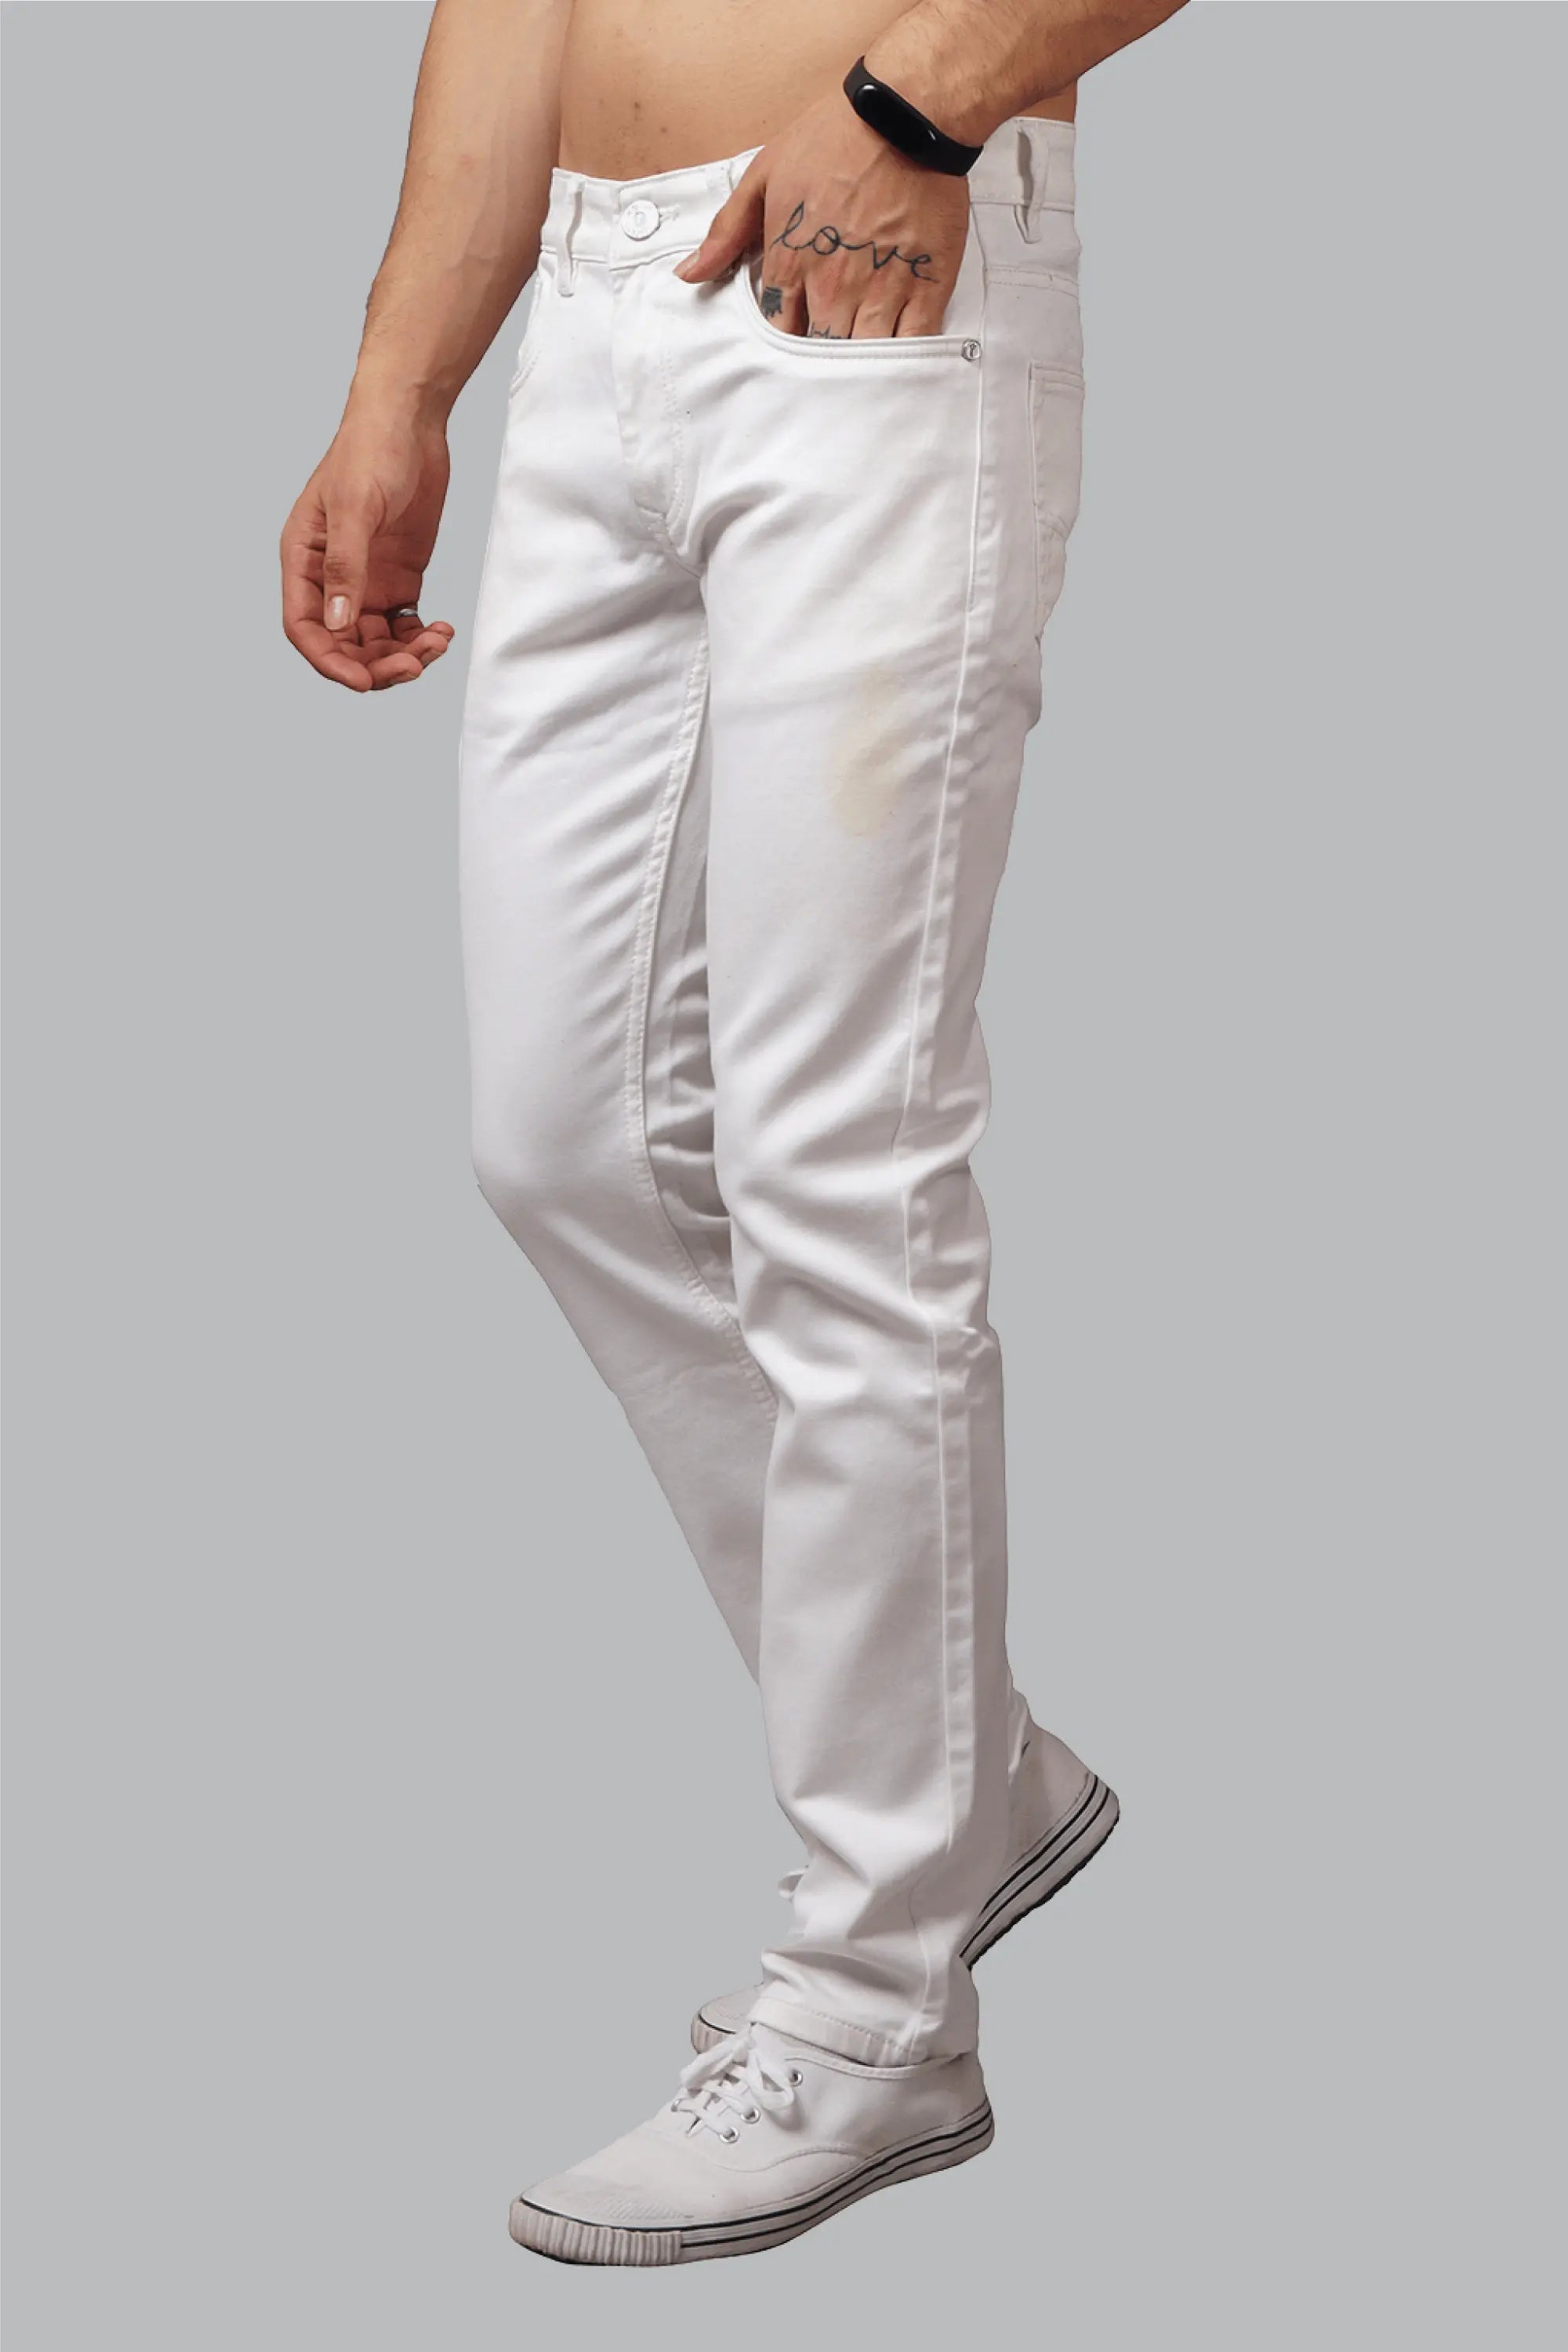 Cato Fashions | Cato Plus Size Curvy White Jeans